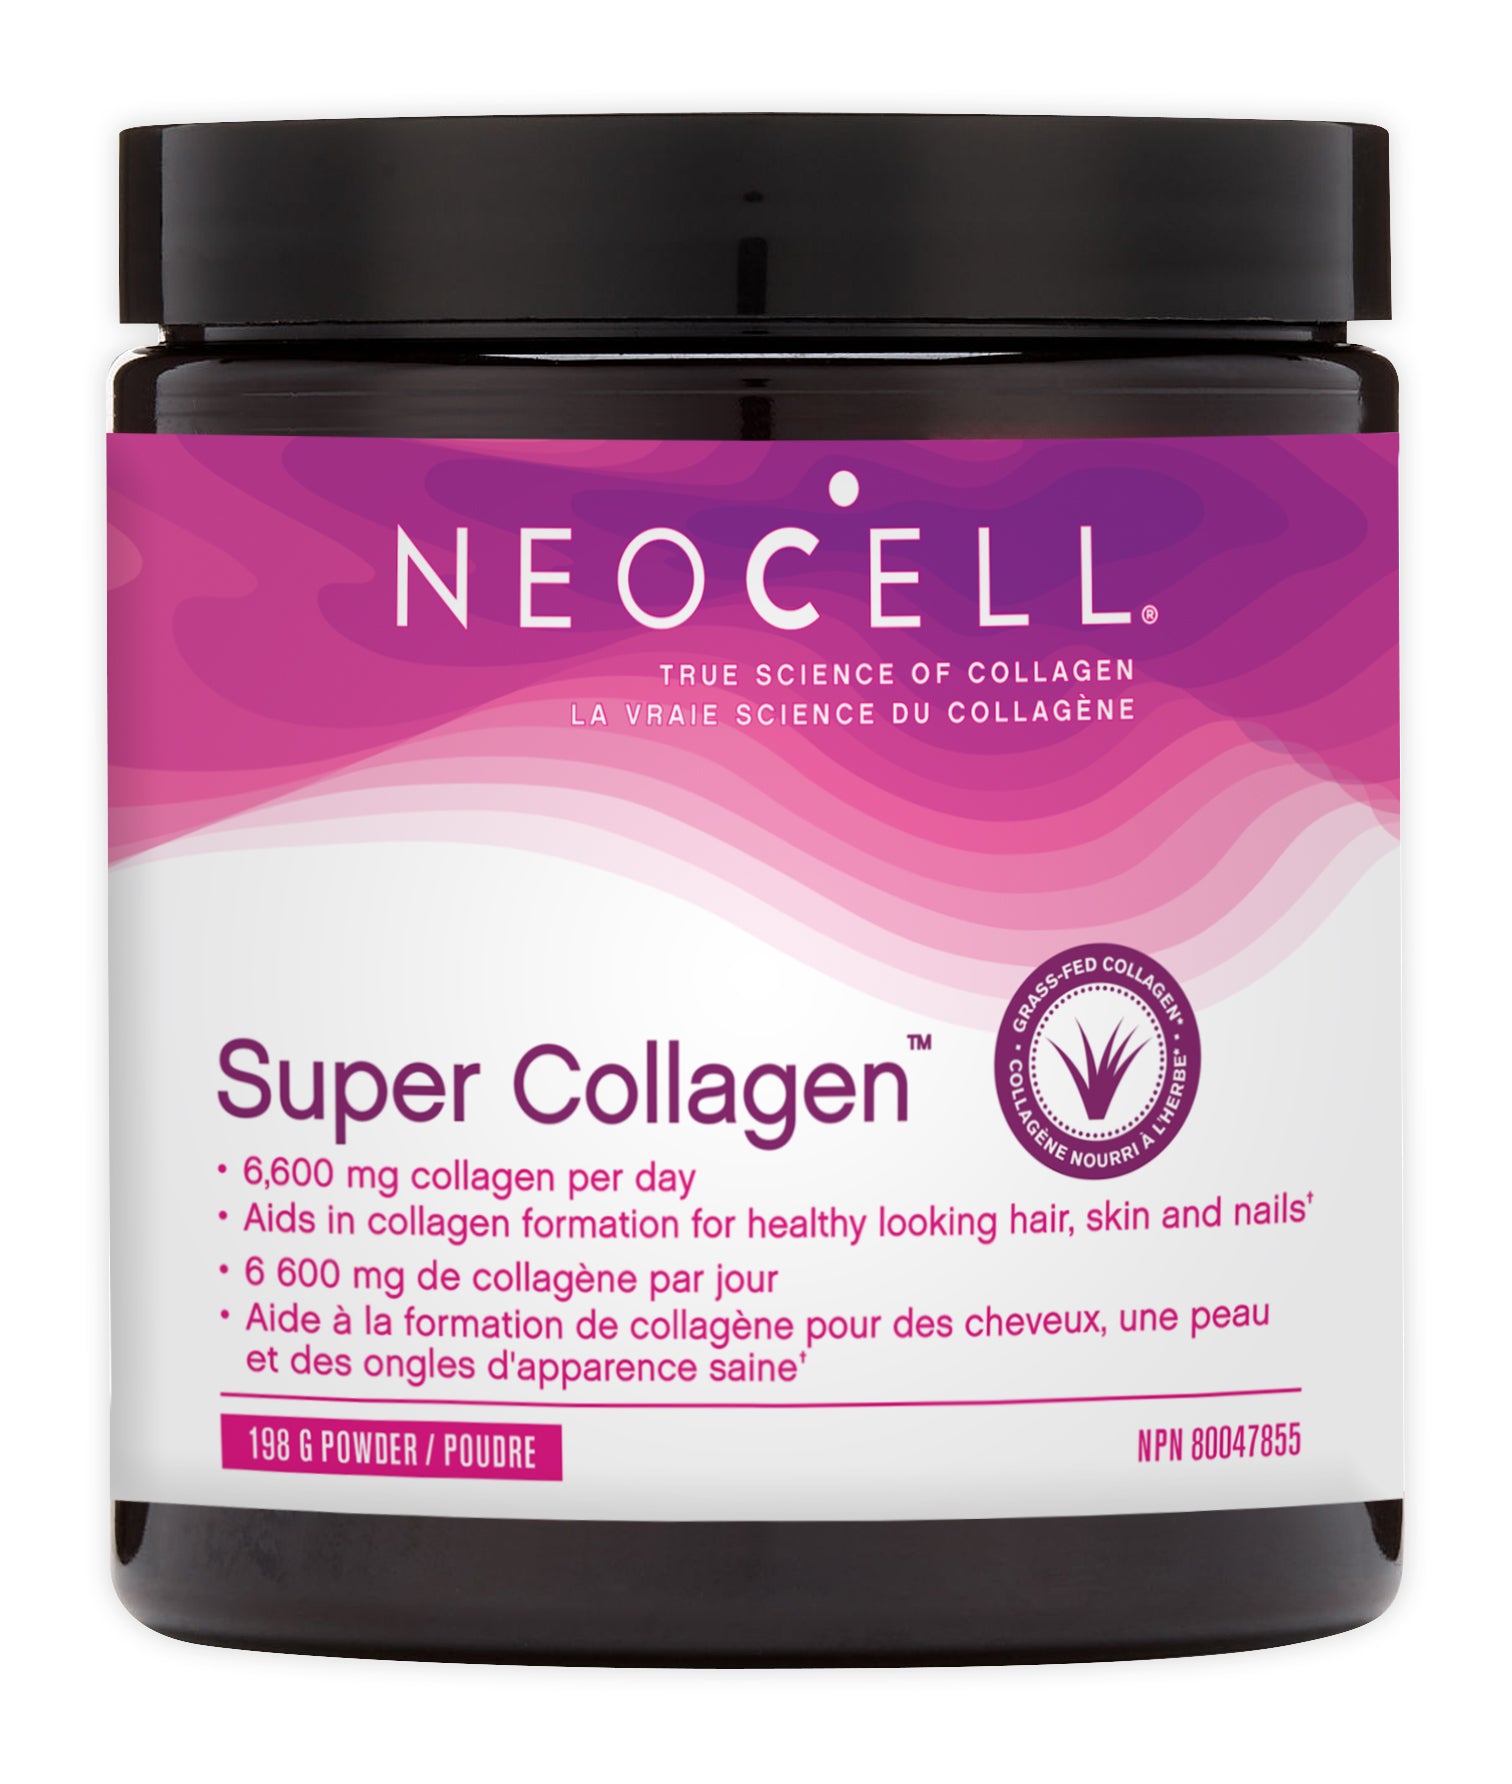 NeoCell Super Collagen 198g Powder